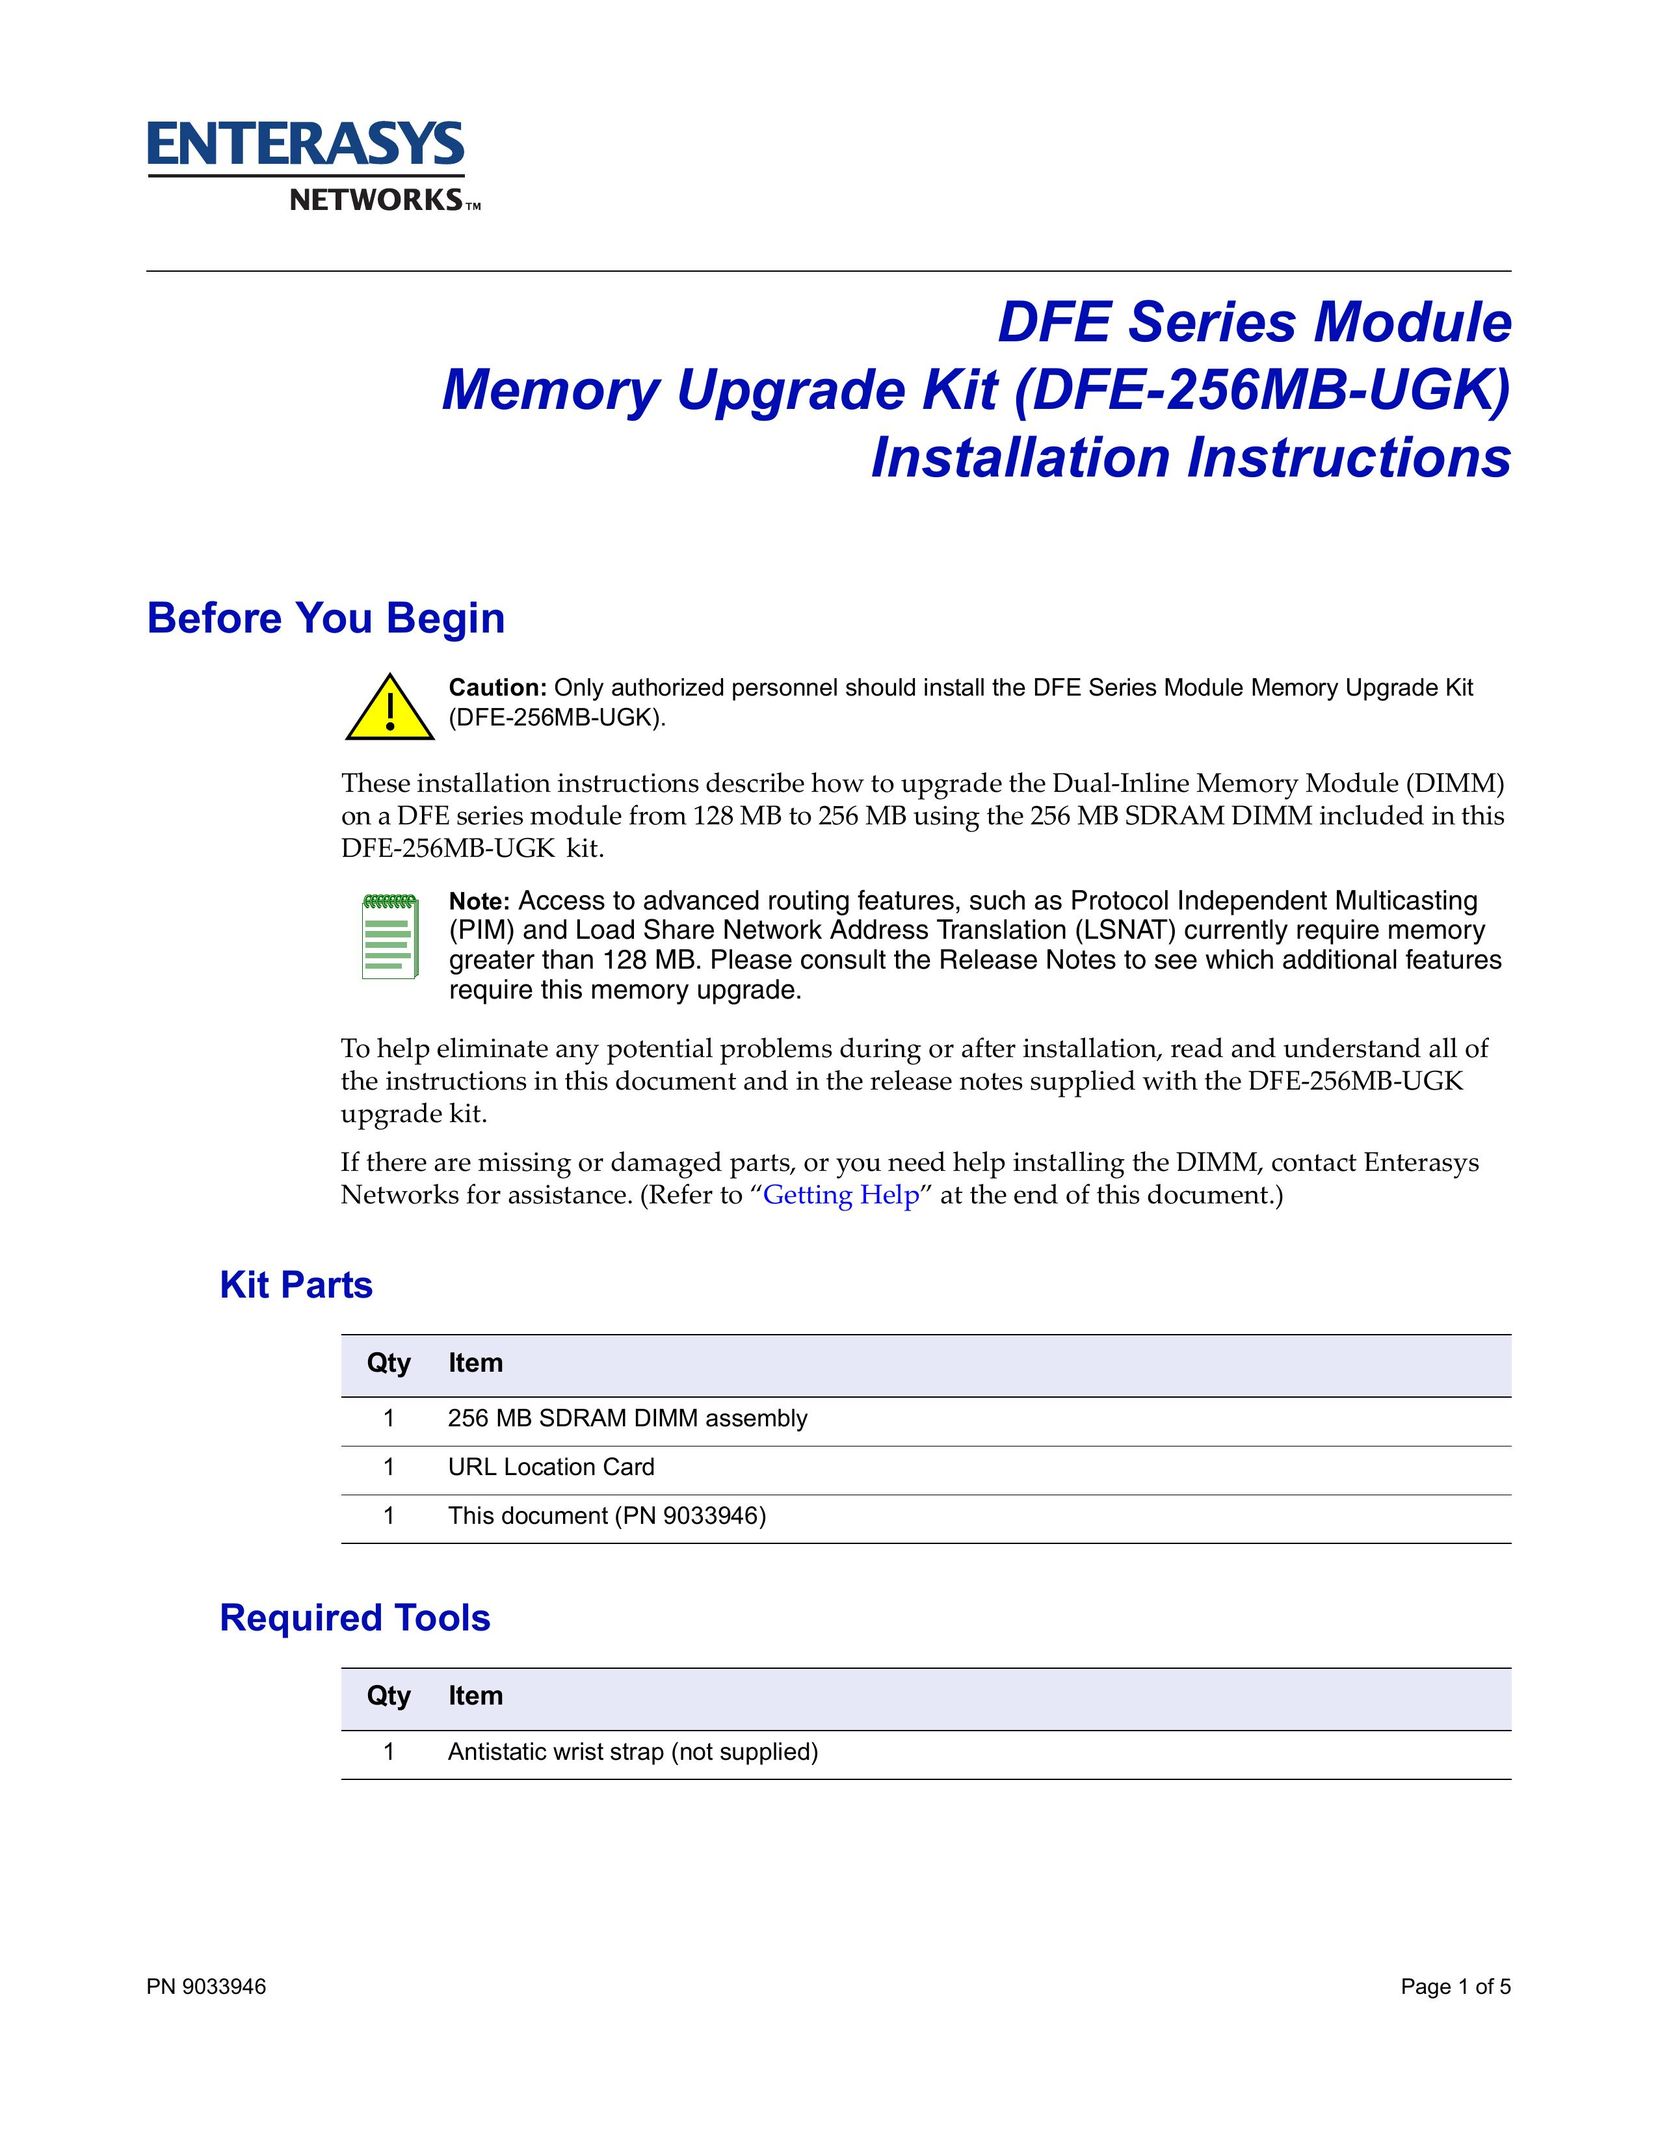 Enterasys Networks DFE-256MB-UGK Computer Hardware User Manual